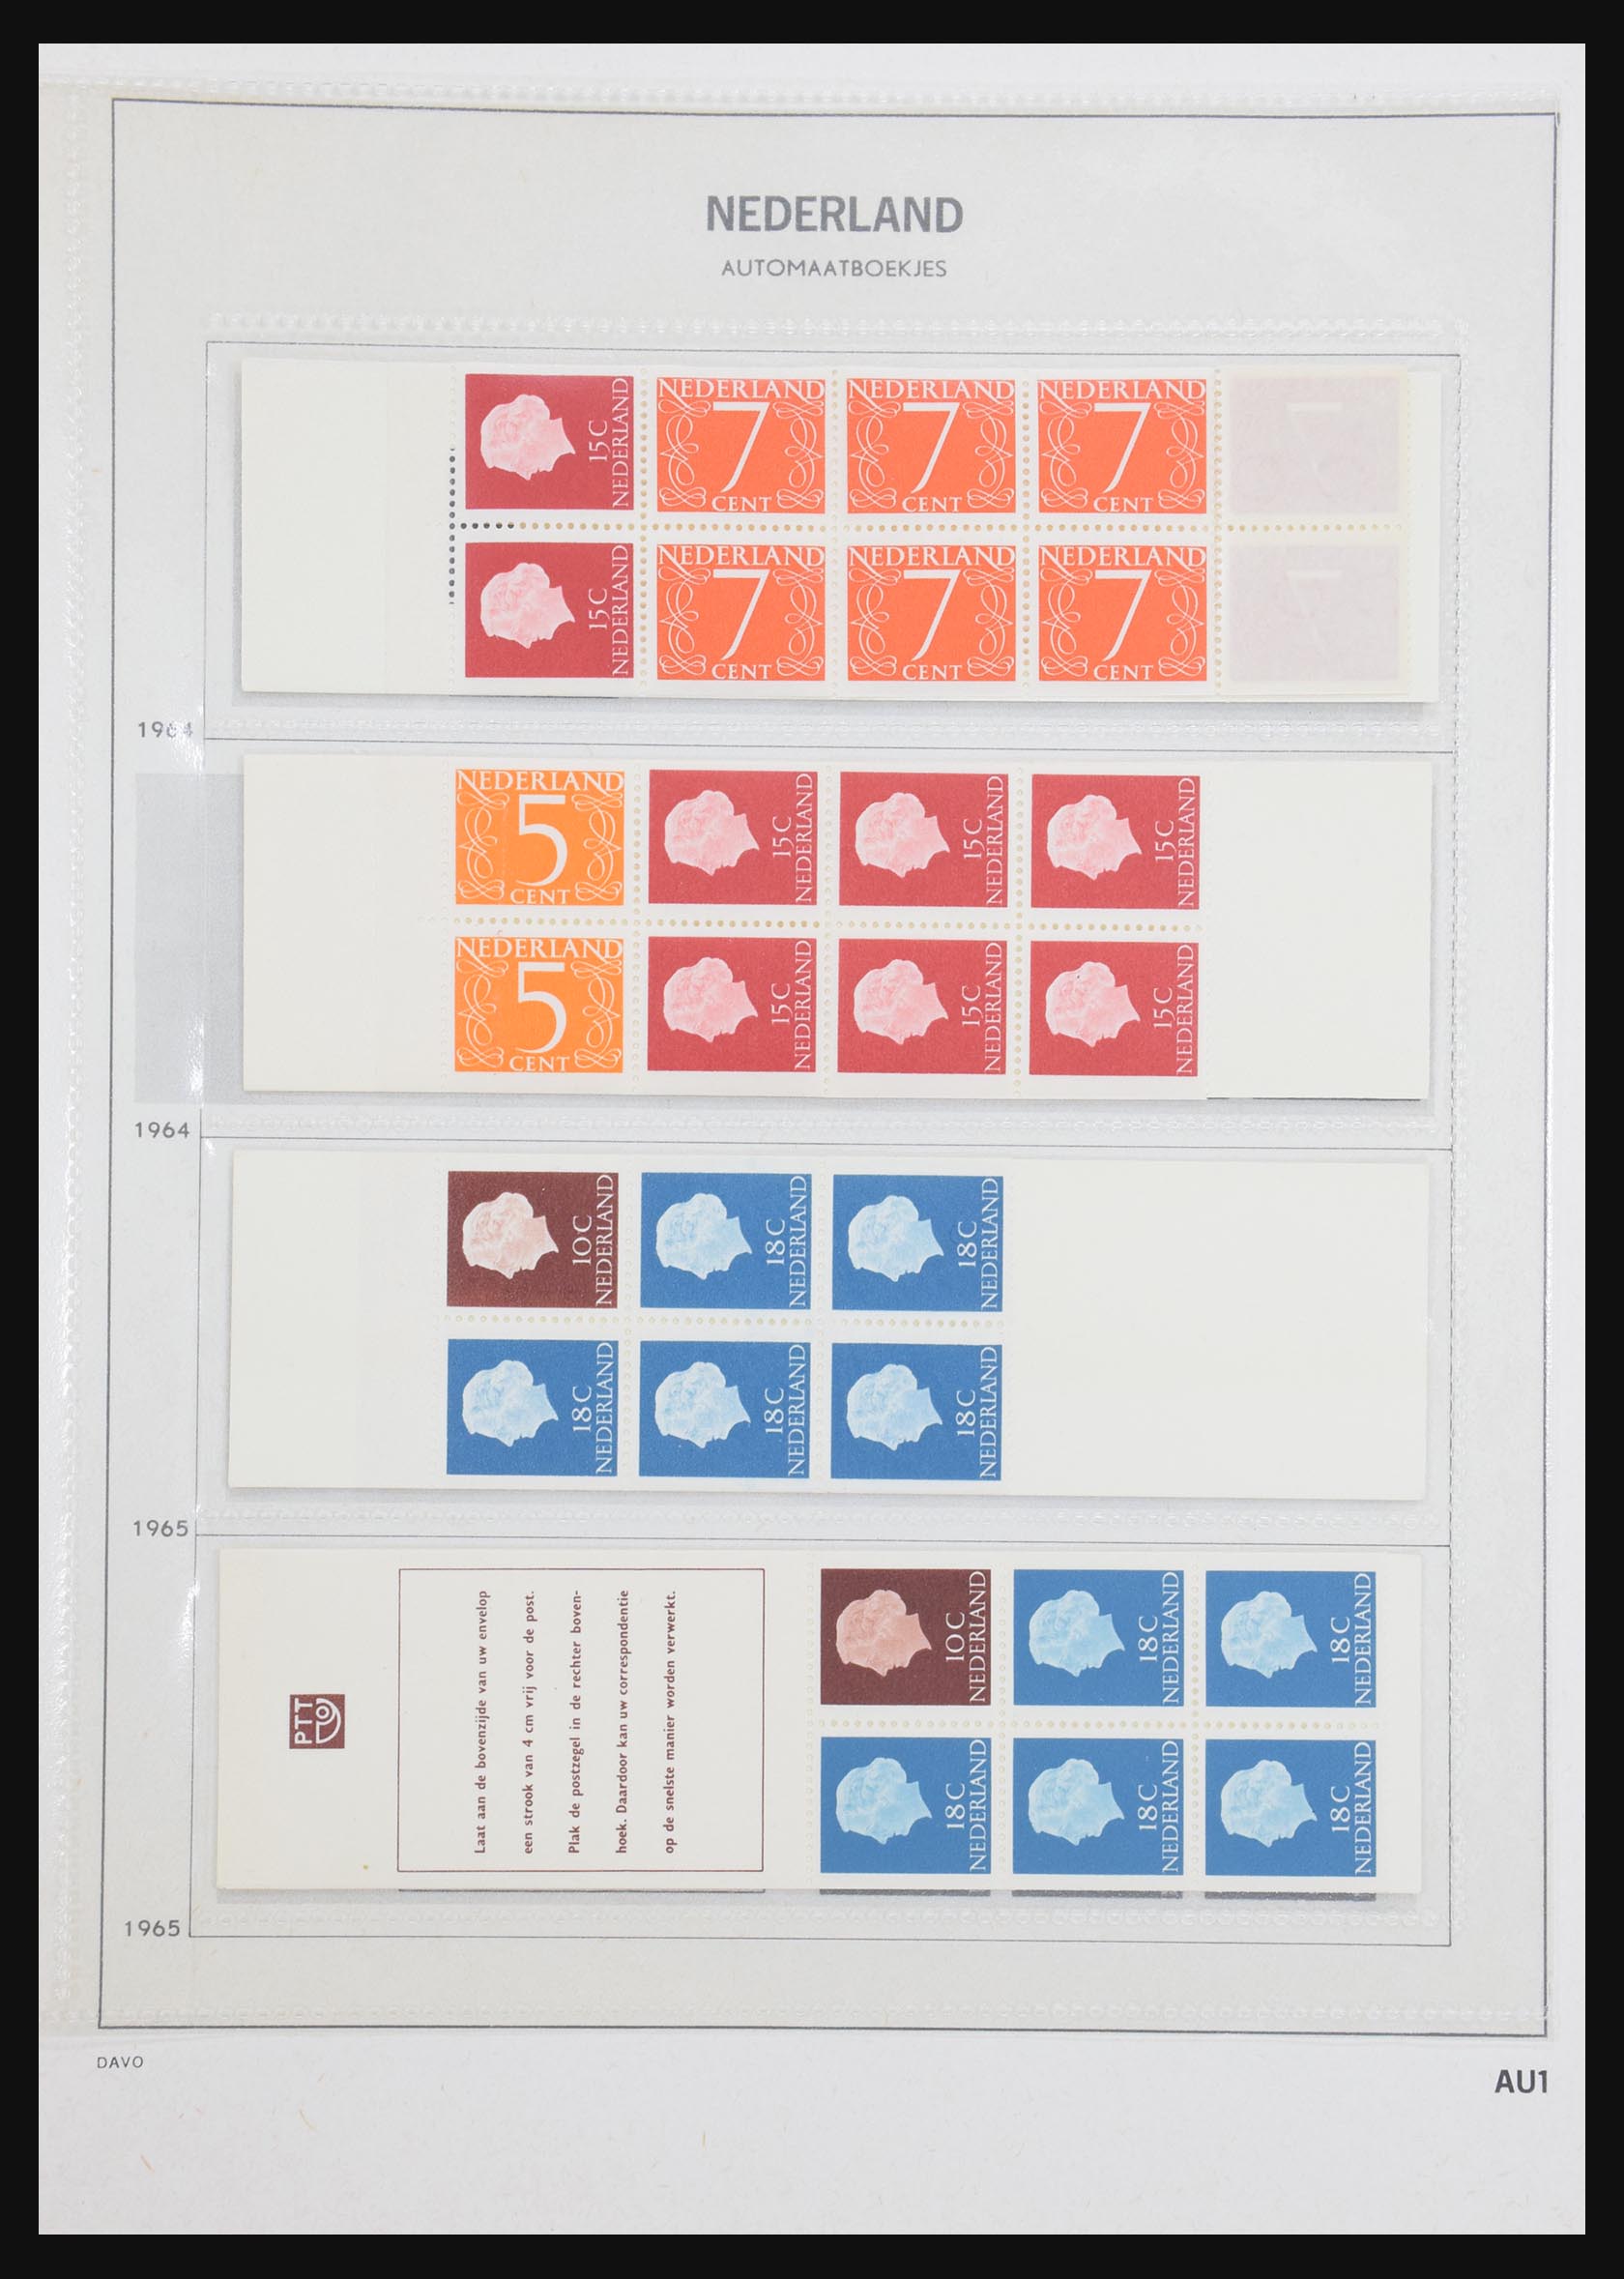 31159 001 - 31159 Nederland postzegelboekjes 1964-1994.